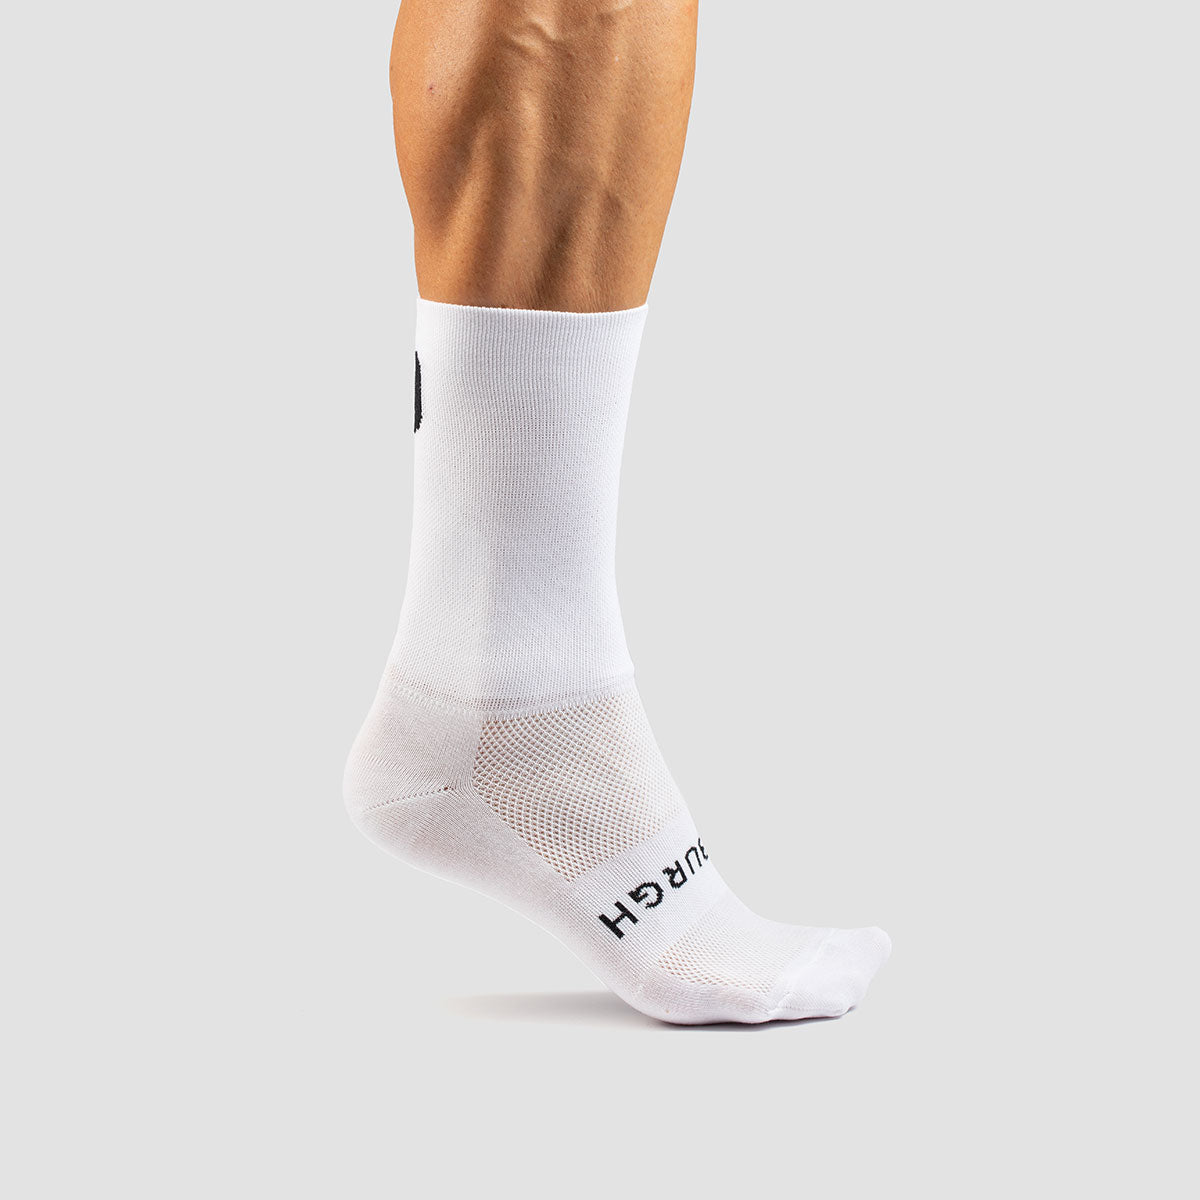 Paper Sock - White